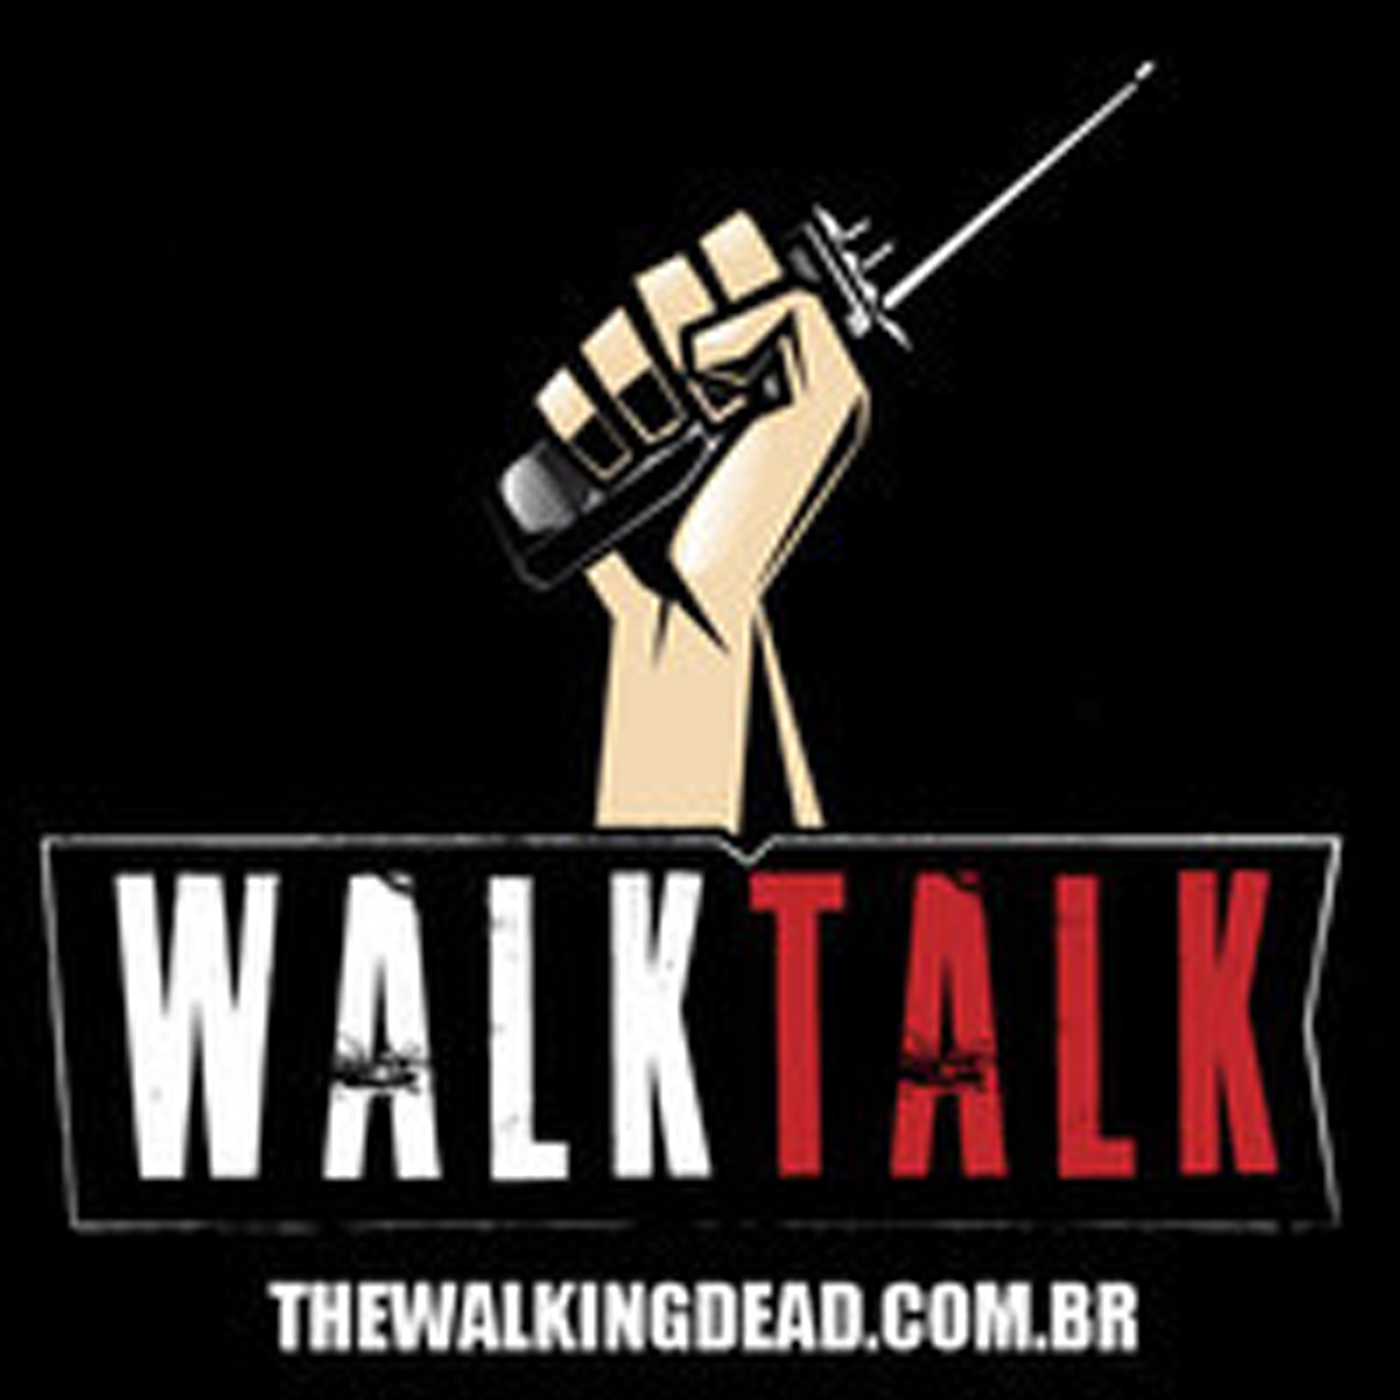 Walktalk